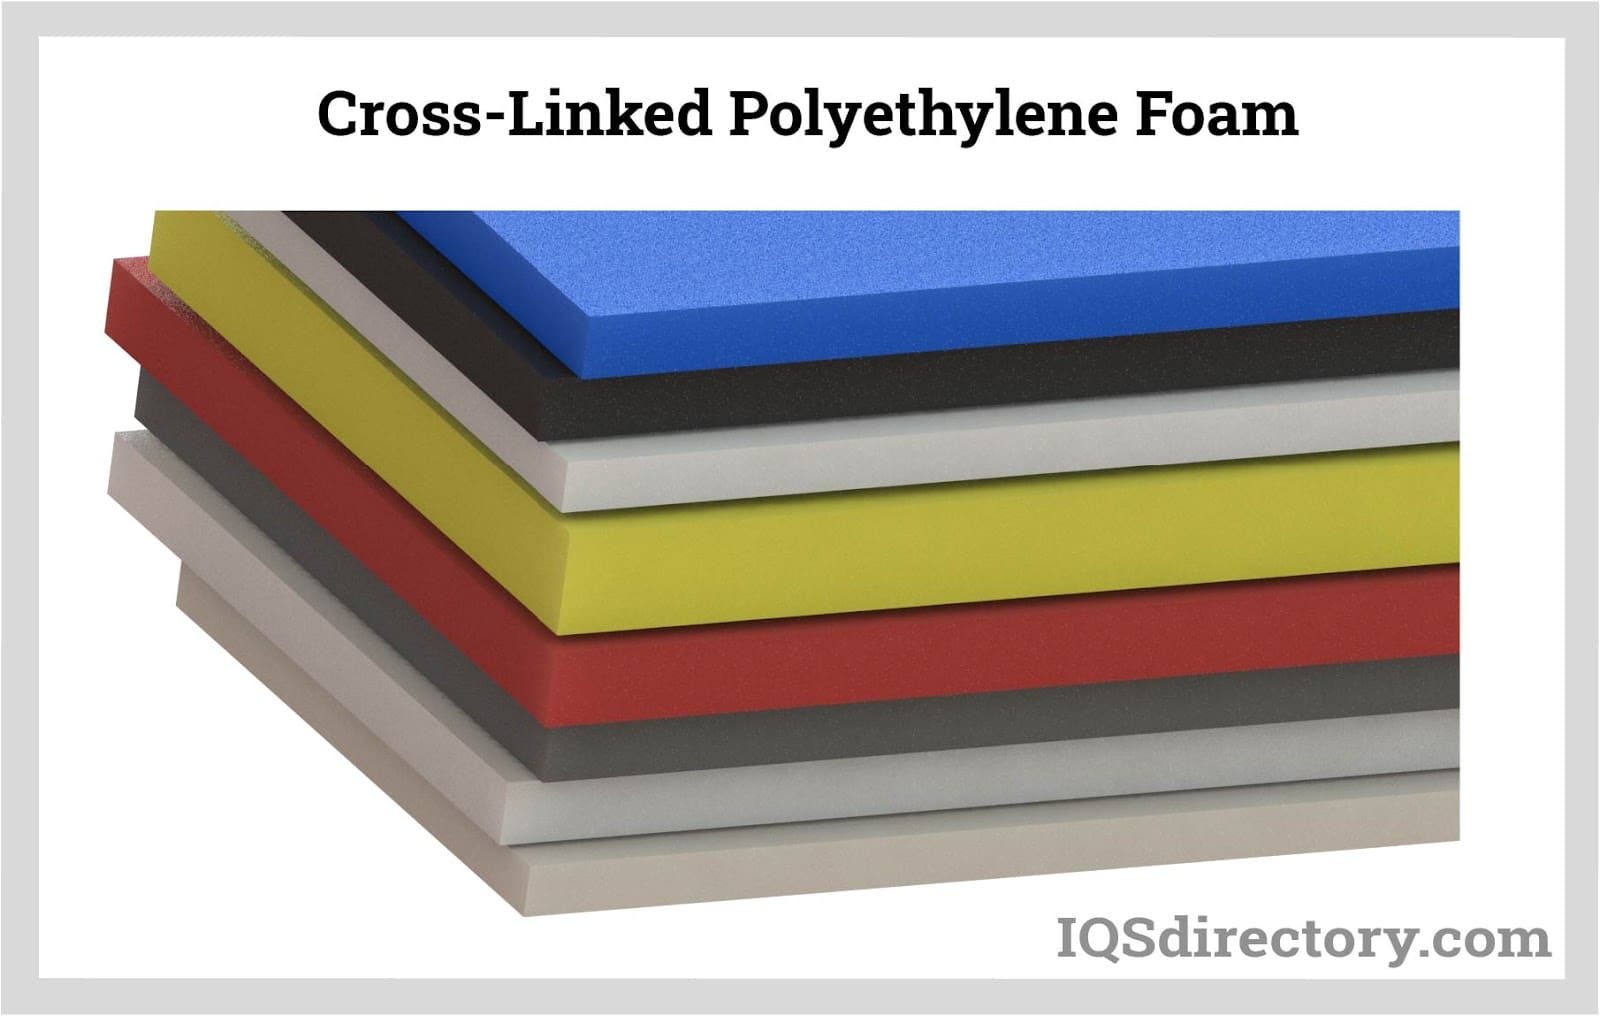 Cross-Linked Polyethylene Foam